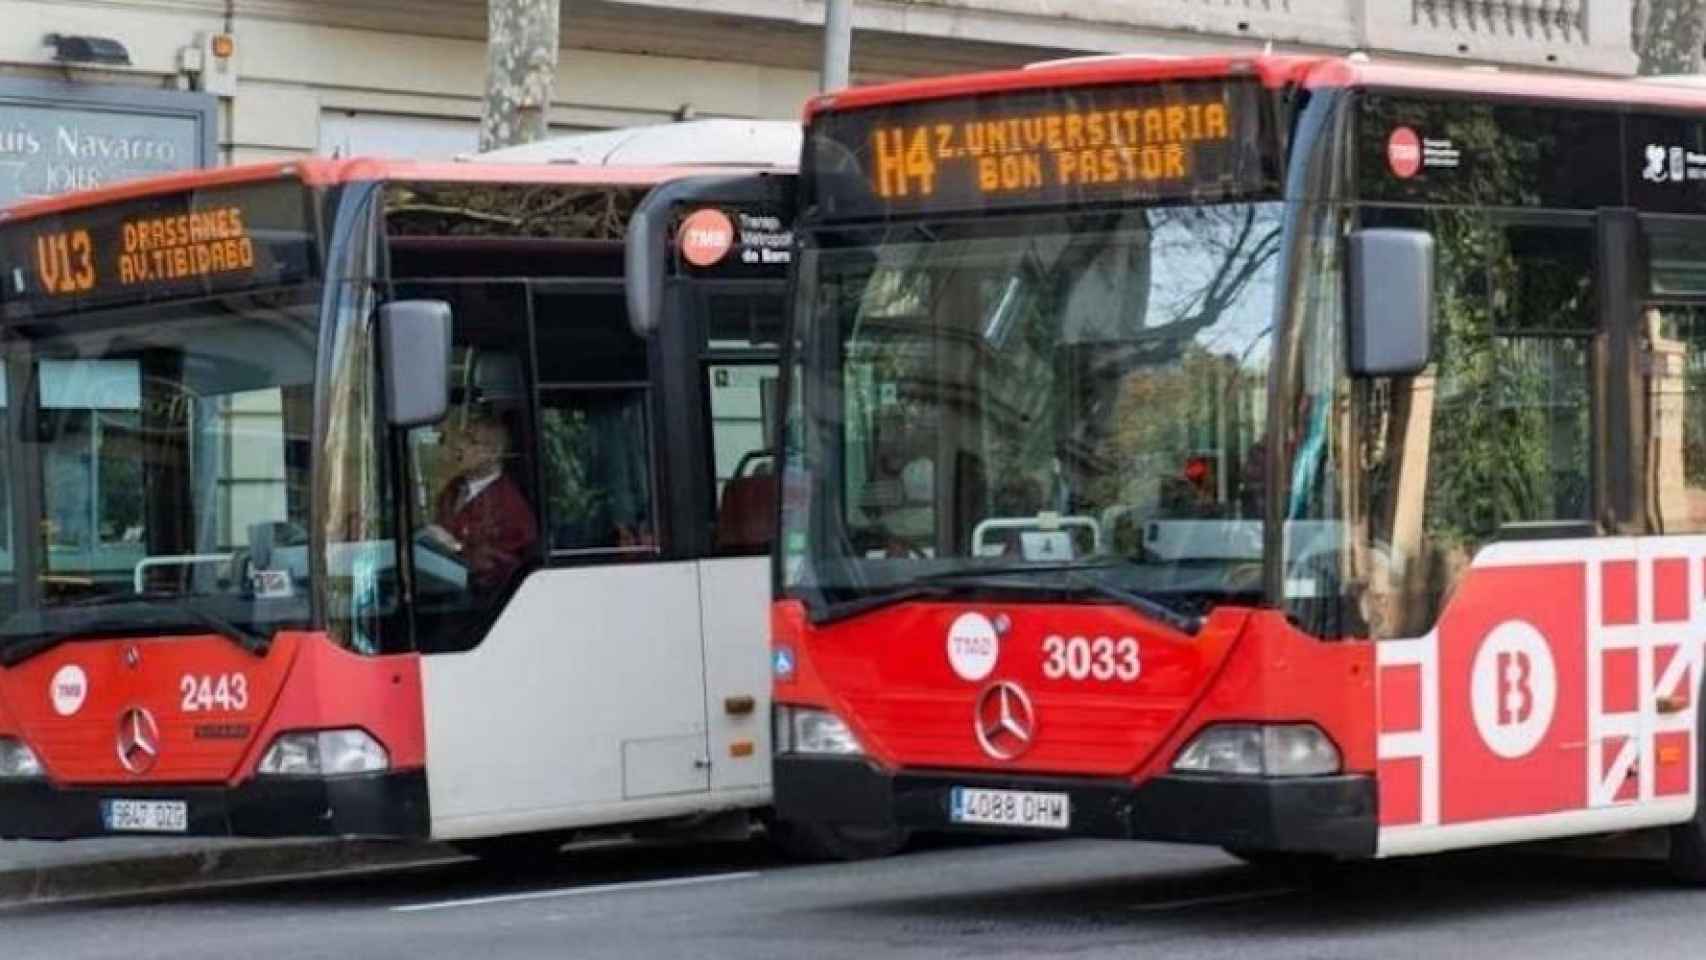 Dos buses de TMB en una calle de Barcelona en una imagen de archivo